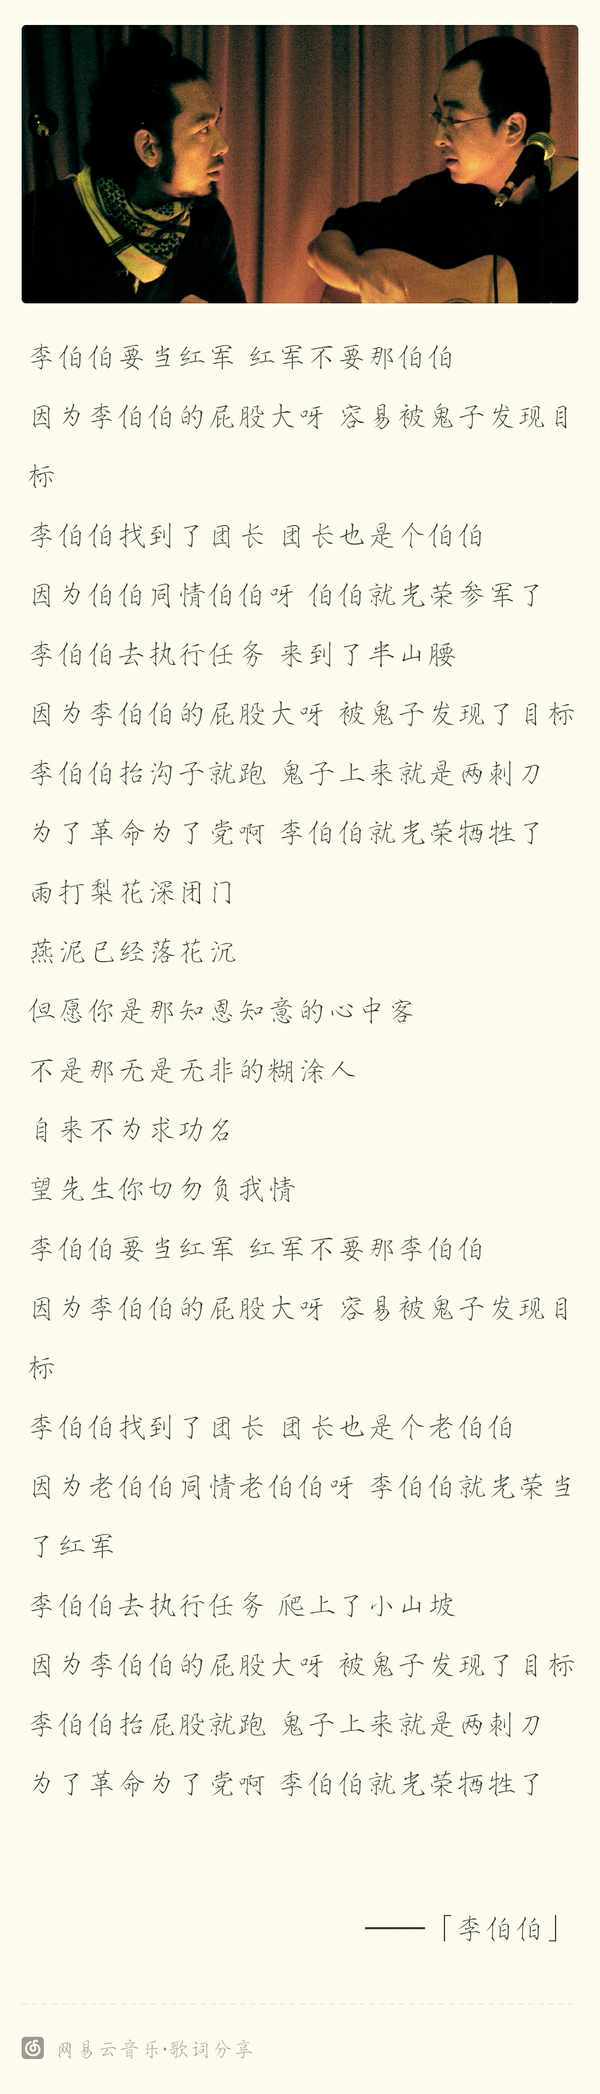 如何理解张玮玮和郭龙的《李伯伯》这首歌的歌词？ - 知乎